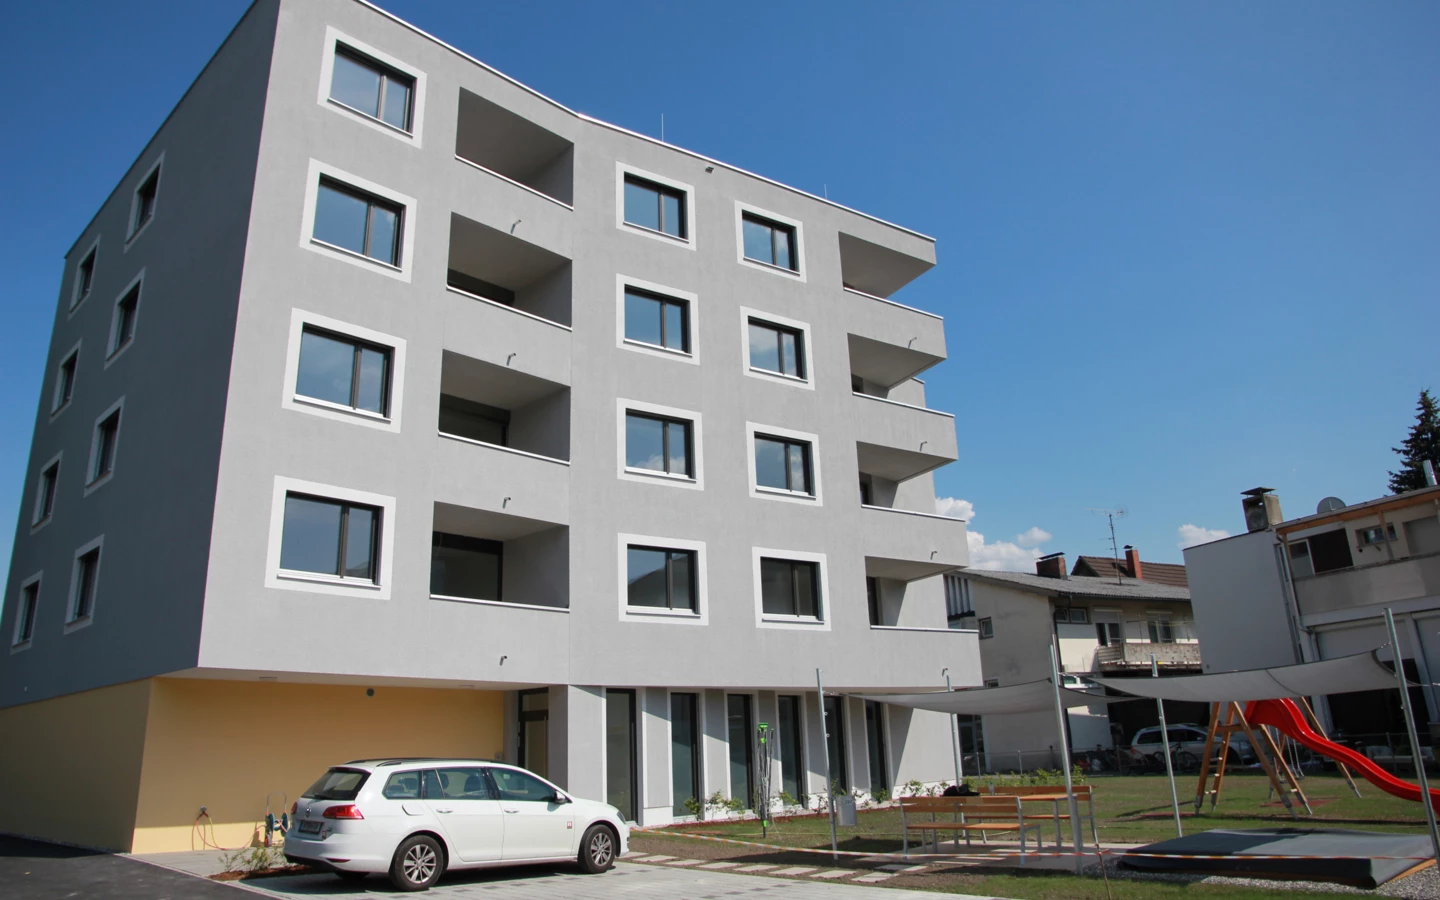 Zwölf Wohneinheiten mit rund 938 m2 Wohnnutzfläche und einer Arztpraxis: Das Objekt in der Bahnhofstraße zeigt wertvolle Synergien auf, die der gemeinnützige Wohnbau bieten kann.